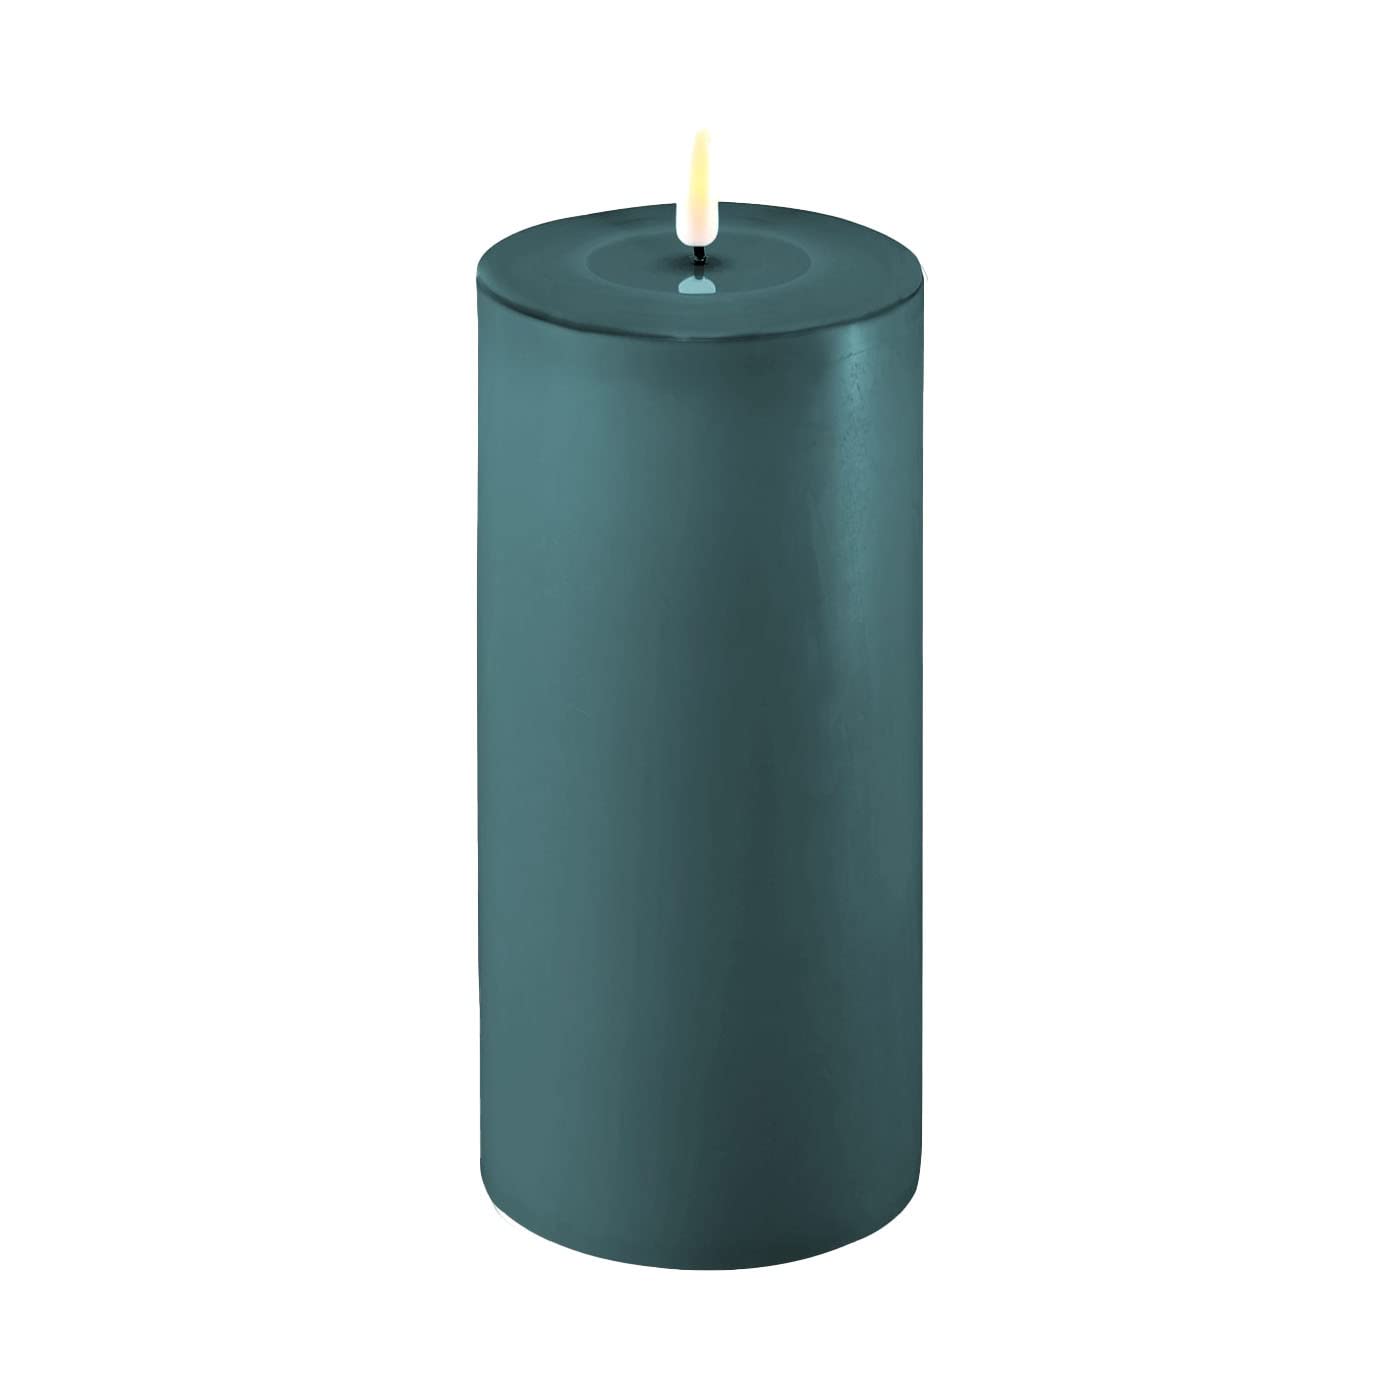 ReWu LED Kerze Deluxe Homeart, Indoor LED-Kerze mit realistischer Flamme auf einem Echtwachsspiegel, warmweißes Licht -Jade Green 10 x 20 cm